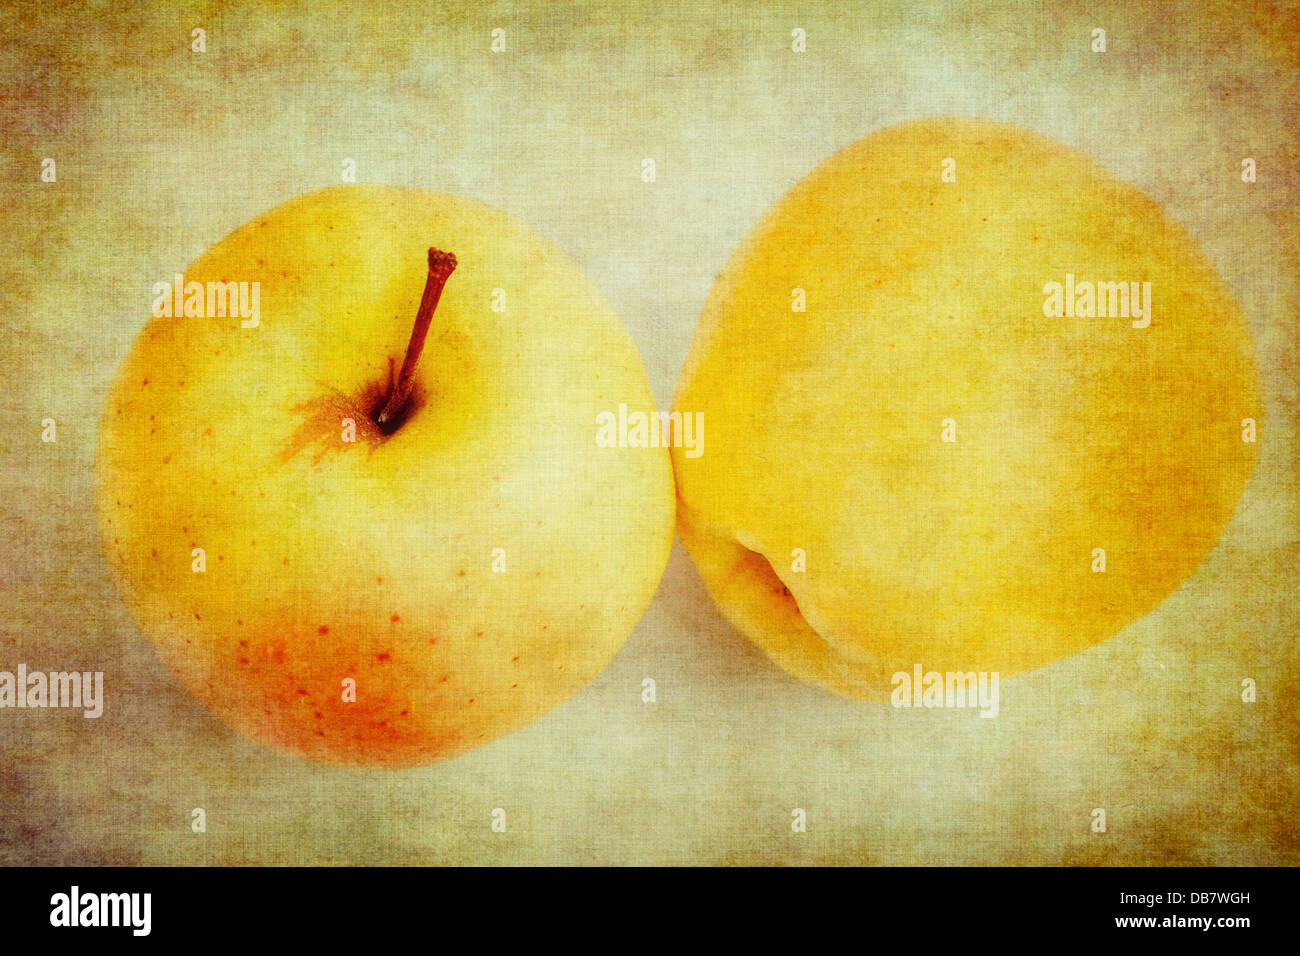 Résumé de la texture des pommes Golden Delicious. Banque D'Images